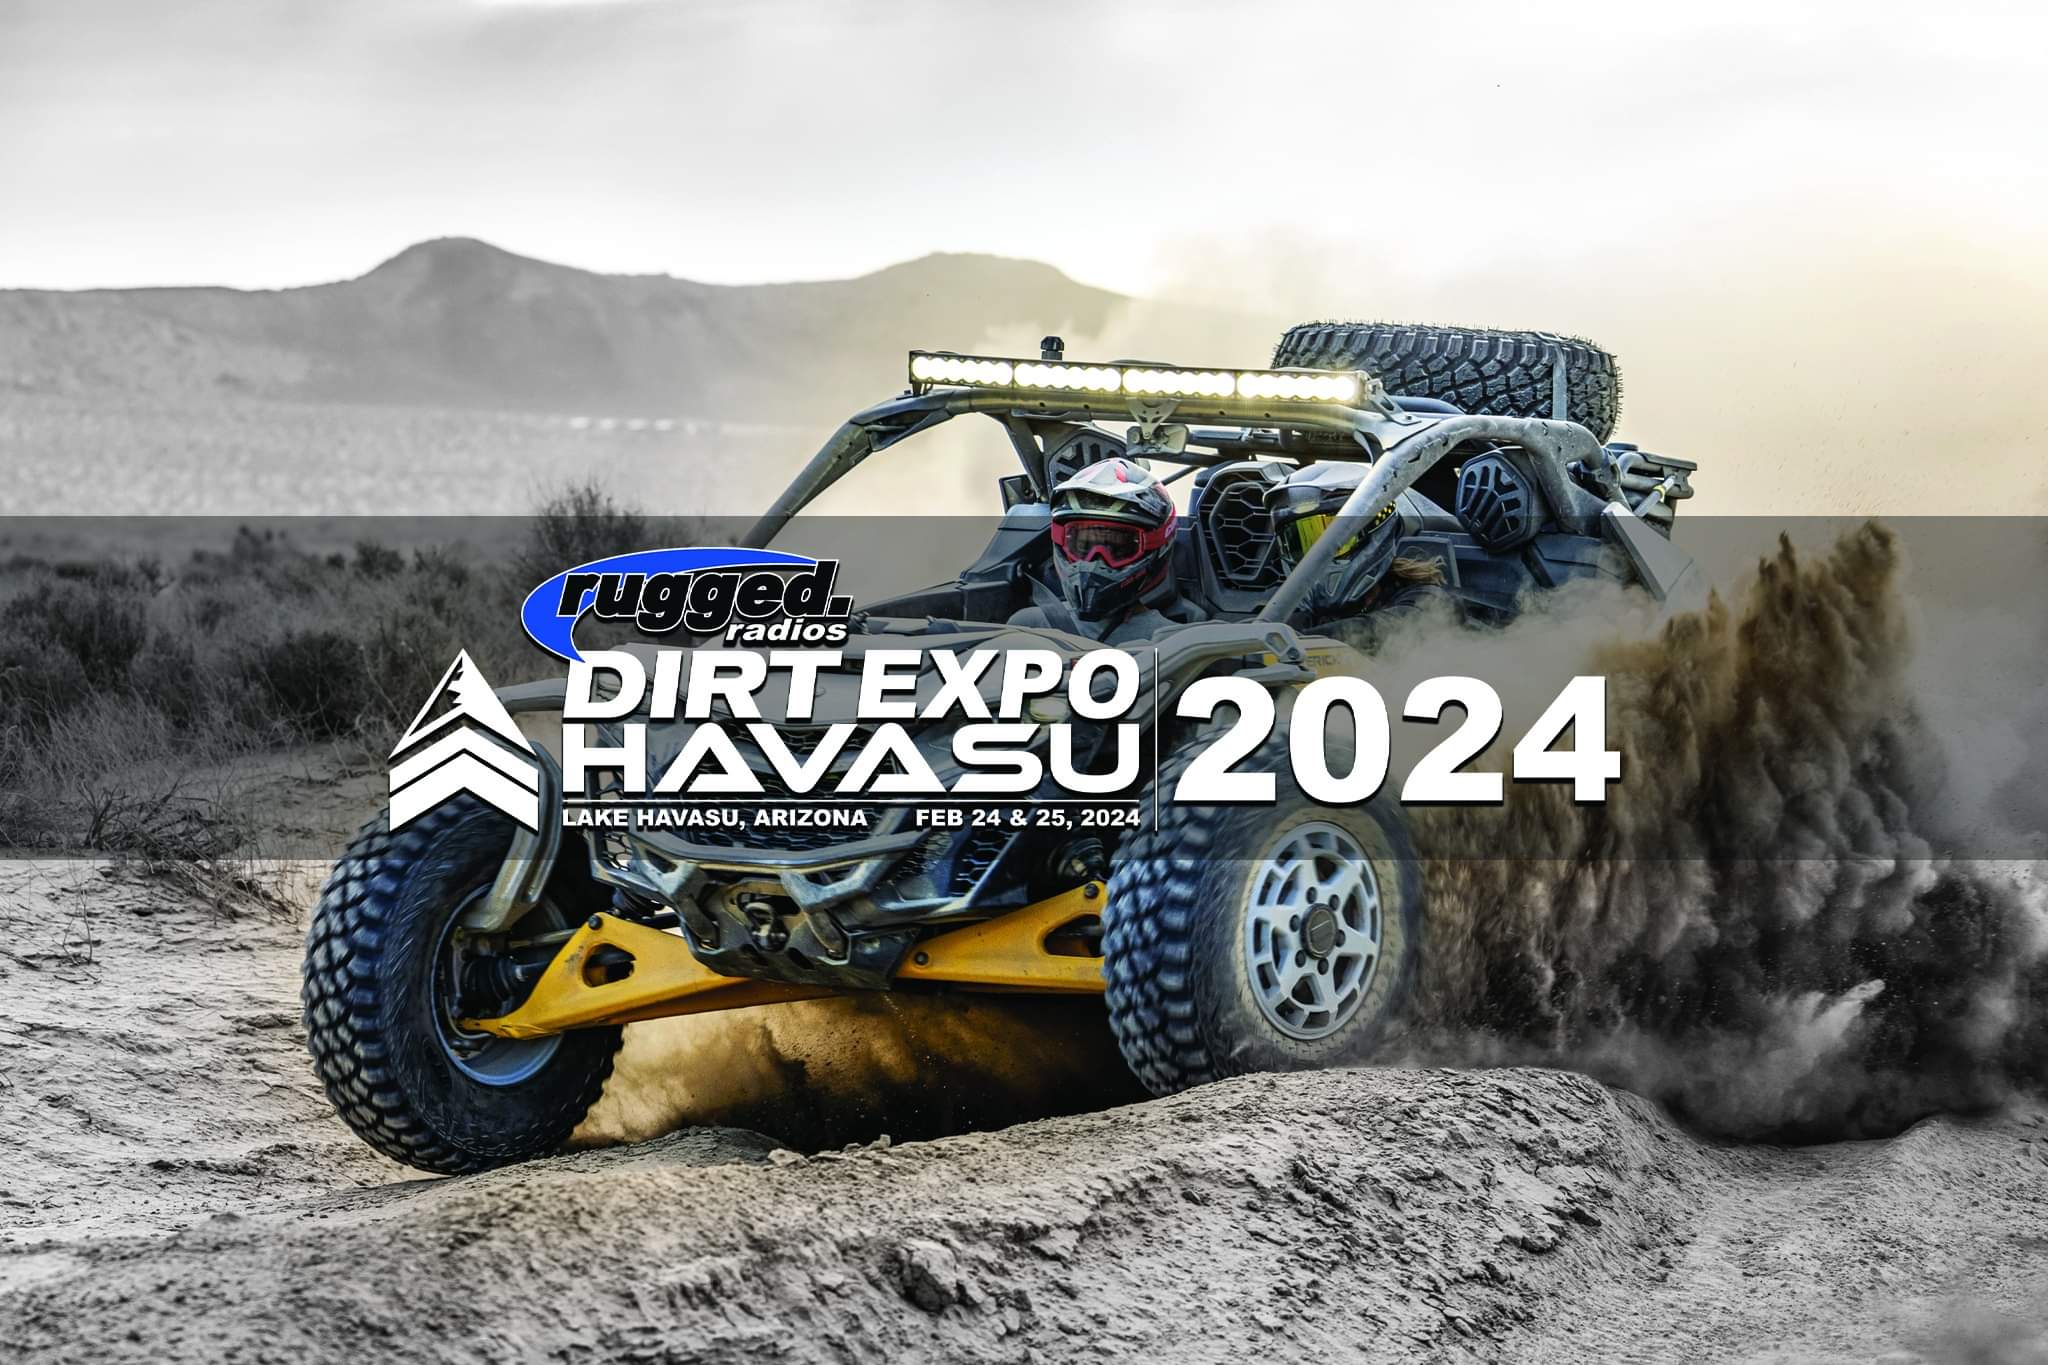 Rugged Dirt Expo Havasu 2024